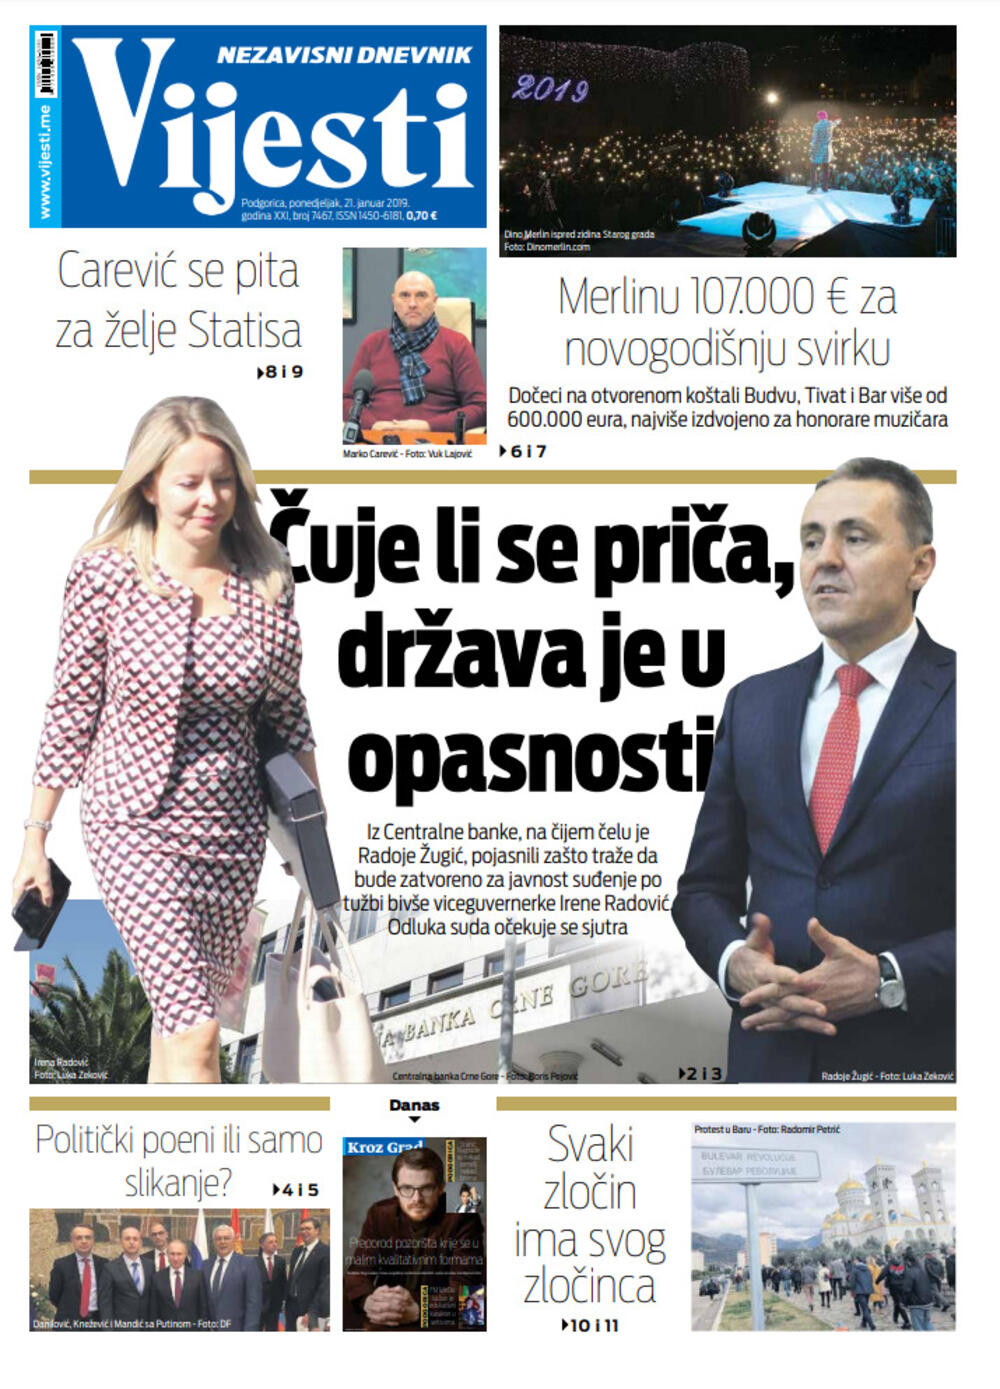 Naslovna strana "Vijesti" za 21. januar, Foto: Vijesti